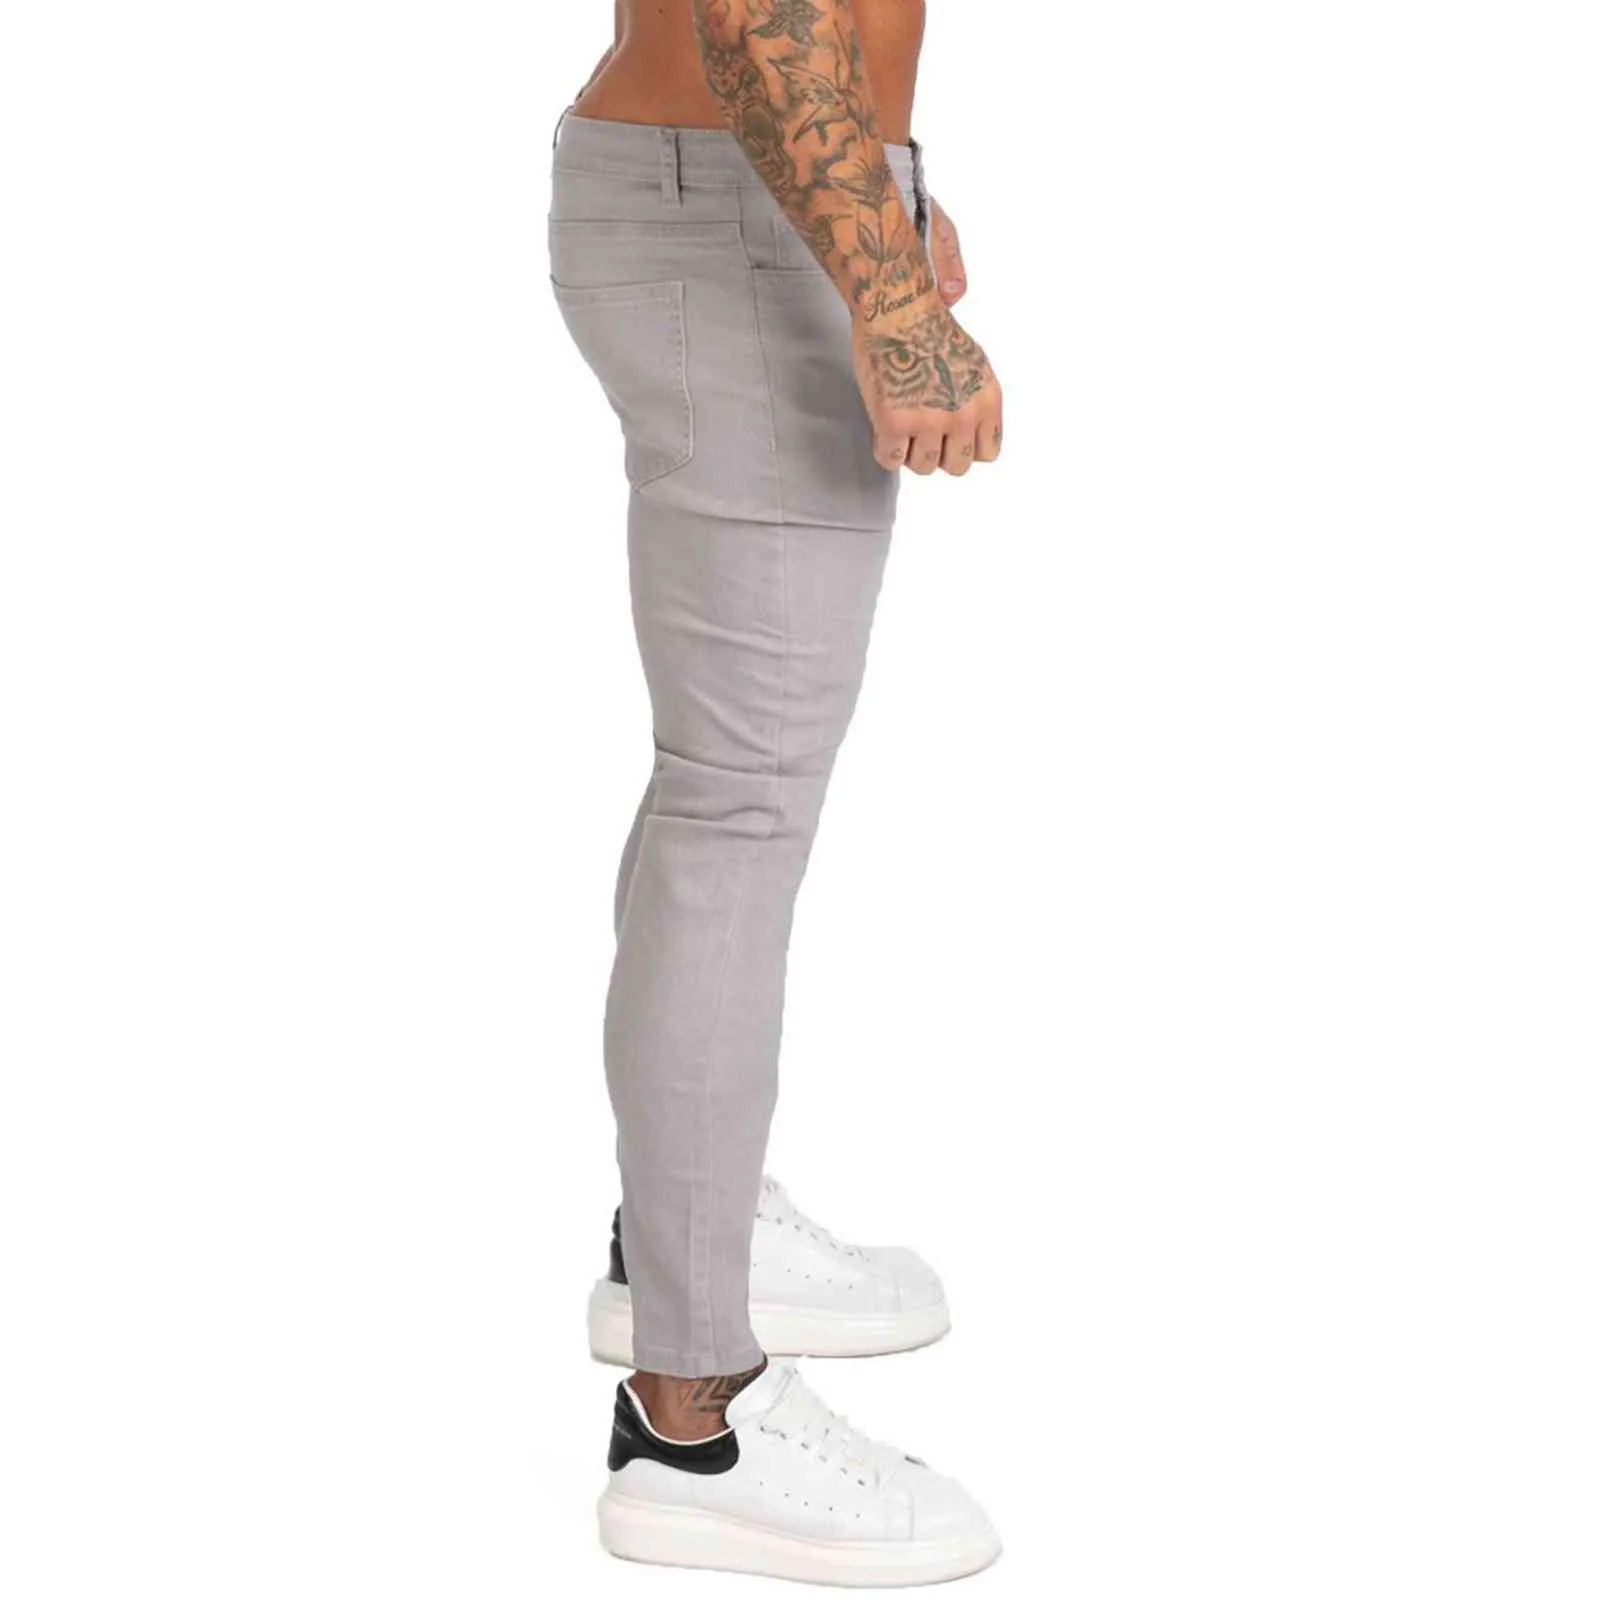 GINGTTO Denim-Hosen für Herren, Skinny Slim Fit, graue Jeans für Hip Hop, knöchelenger Schnitt, eng am Körper anliegend, große Größe, Stretch, zm175, 211111